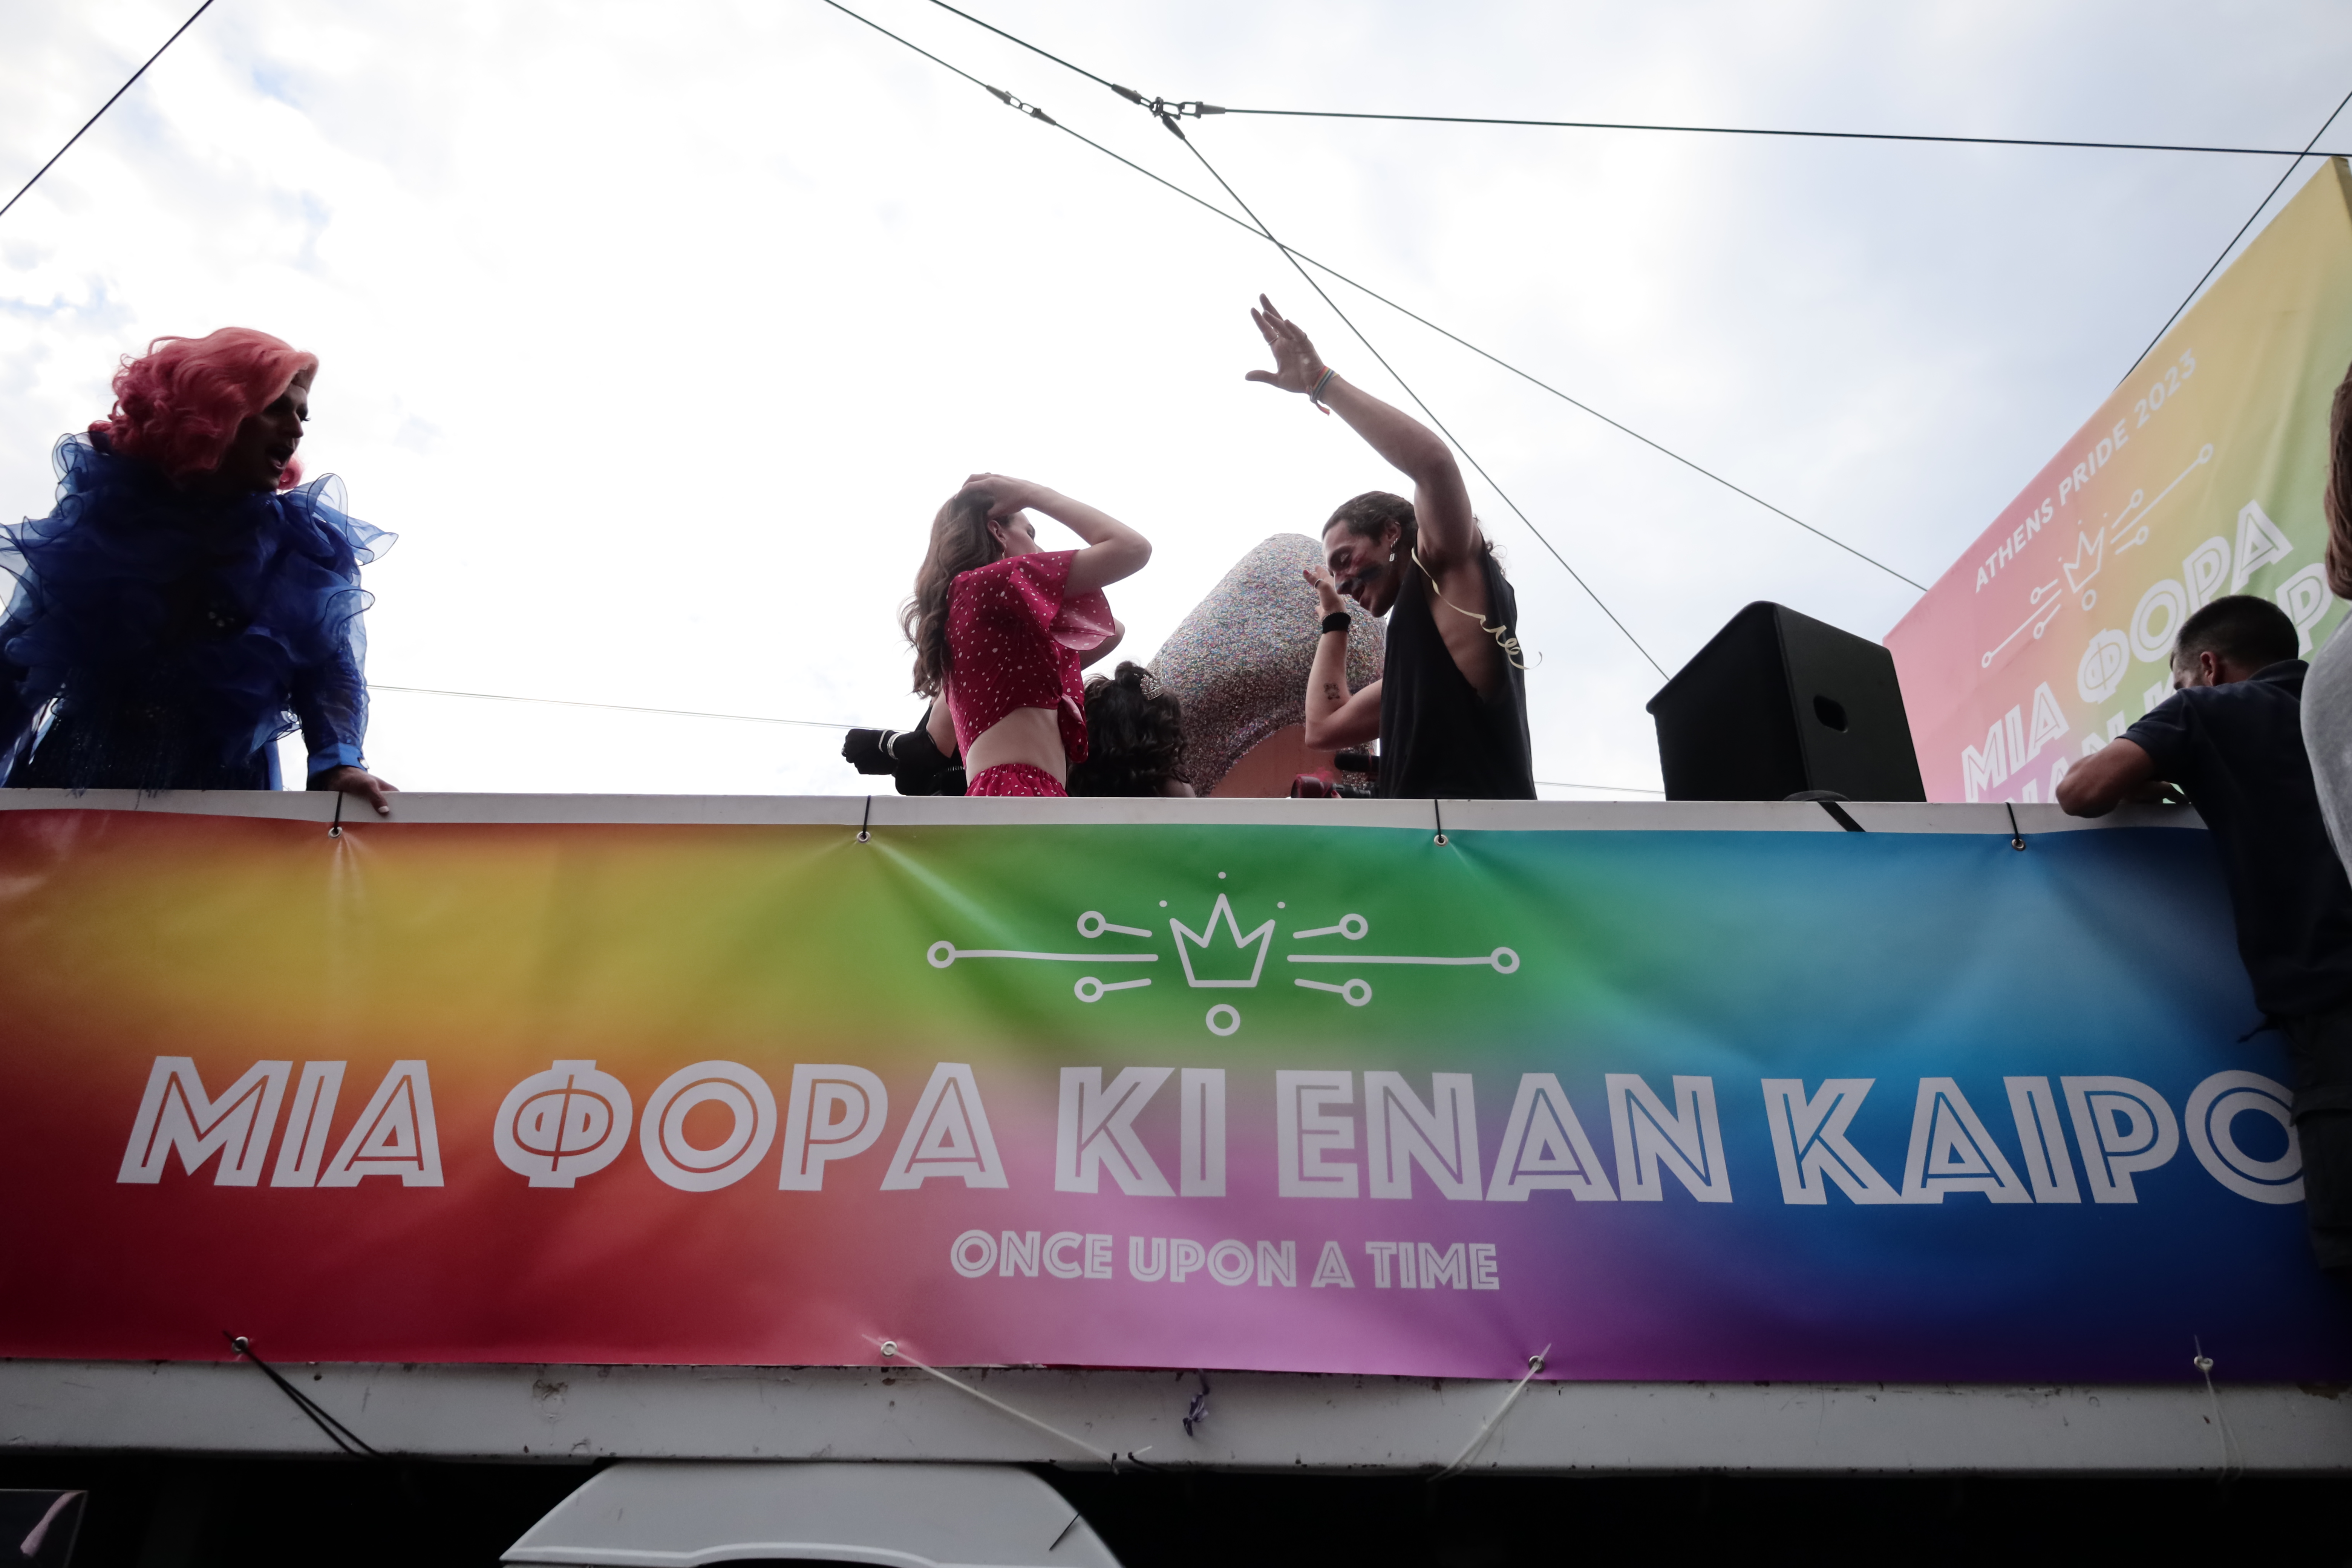 Πλημμύρισε η πλατεία Κοτζιά από κόσμο που συμμετέχει στις εκδηλώσεις του φετινού Athens Pride 2023 στηρίζοντας τη διαφορετικότητα.

